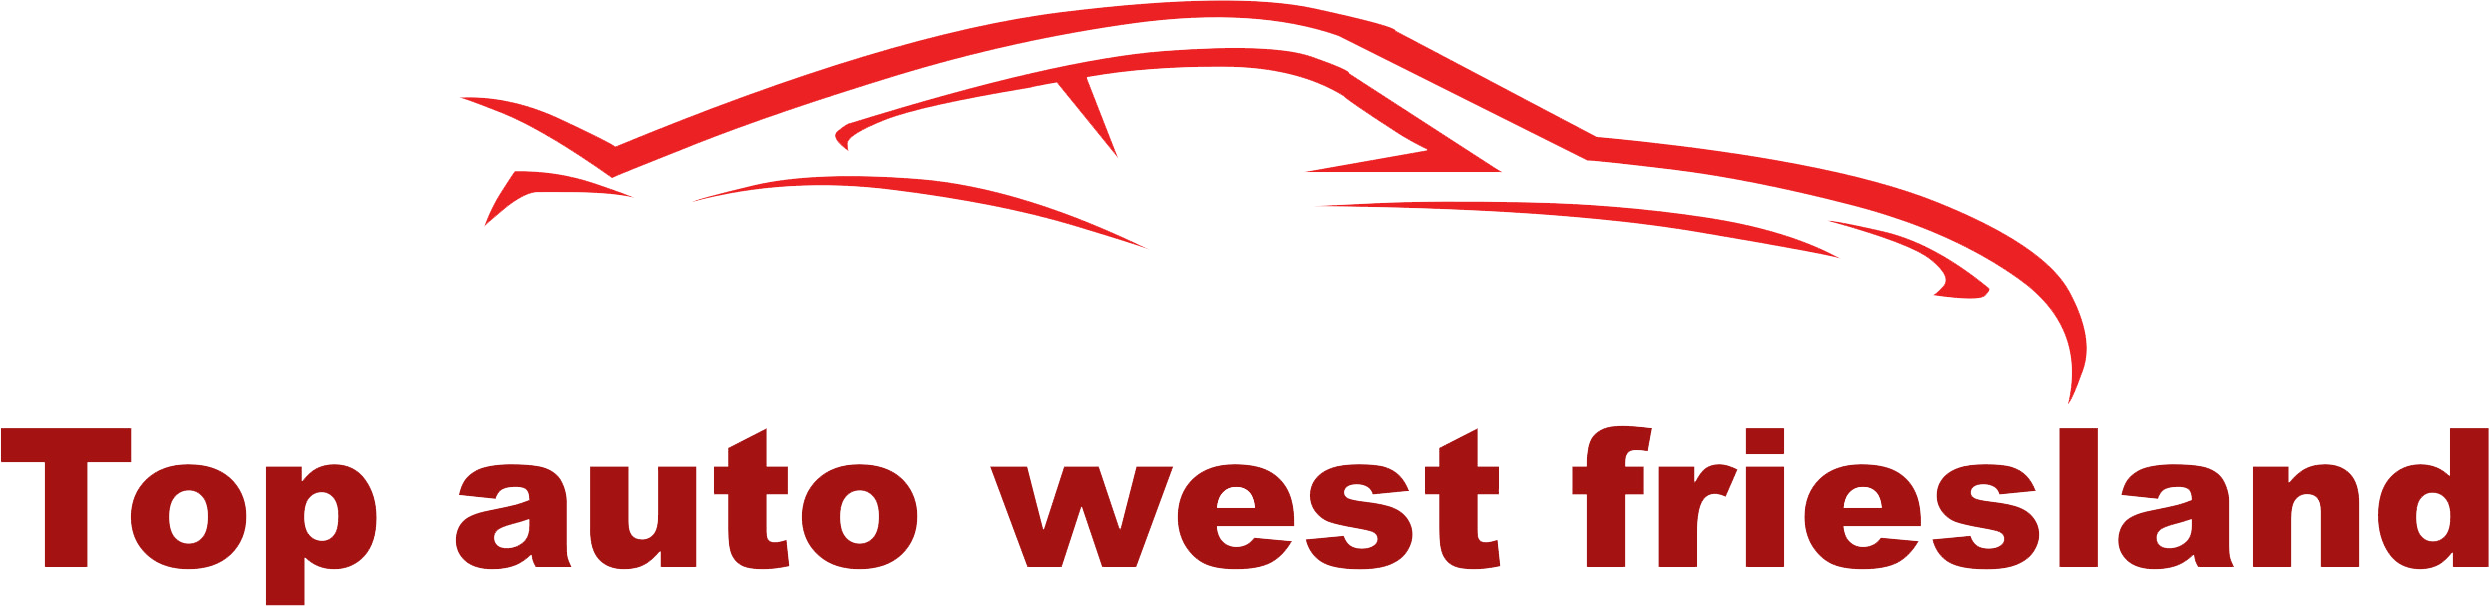 Top Auto West-Friesland logo